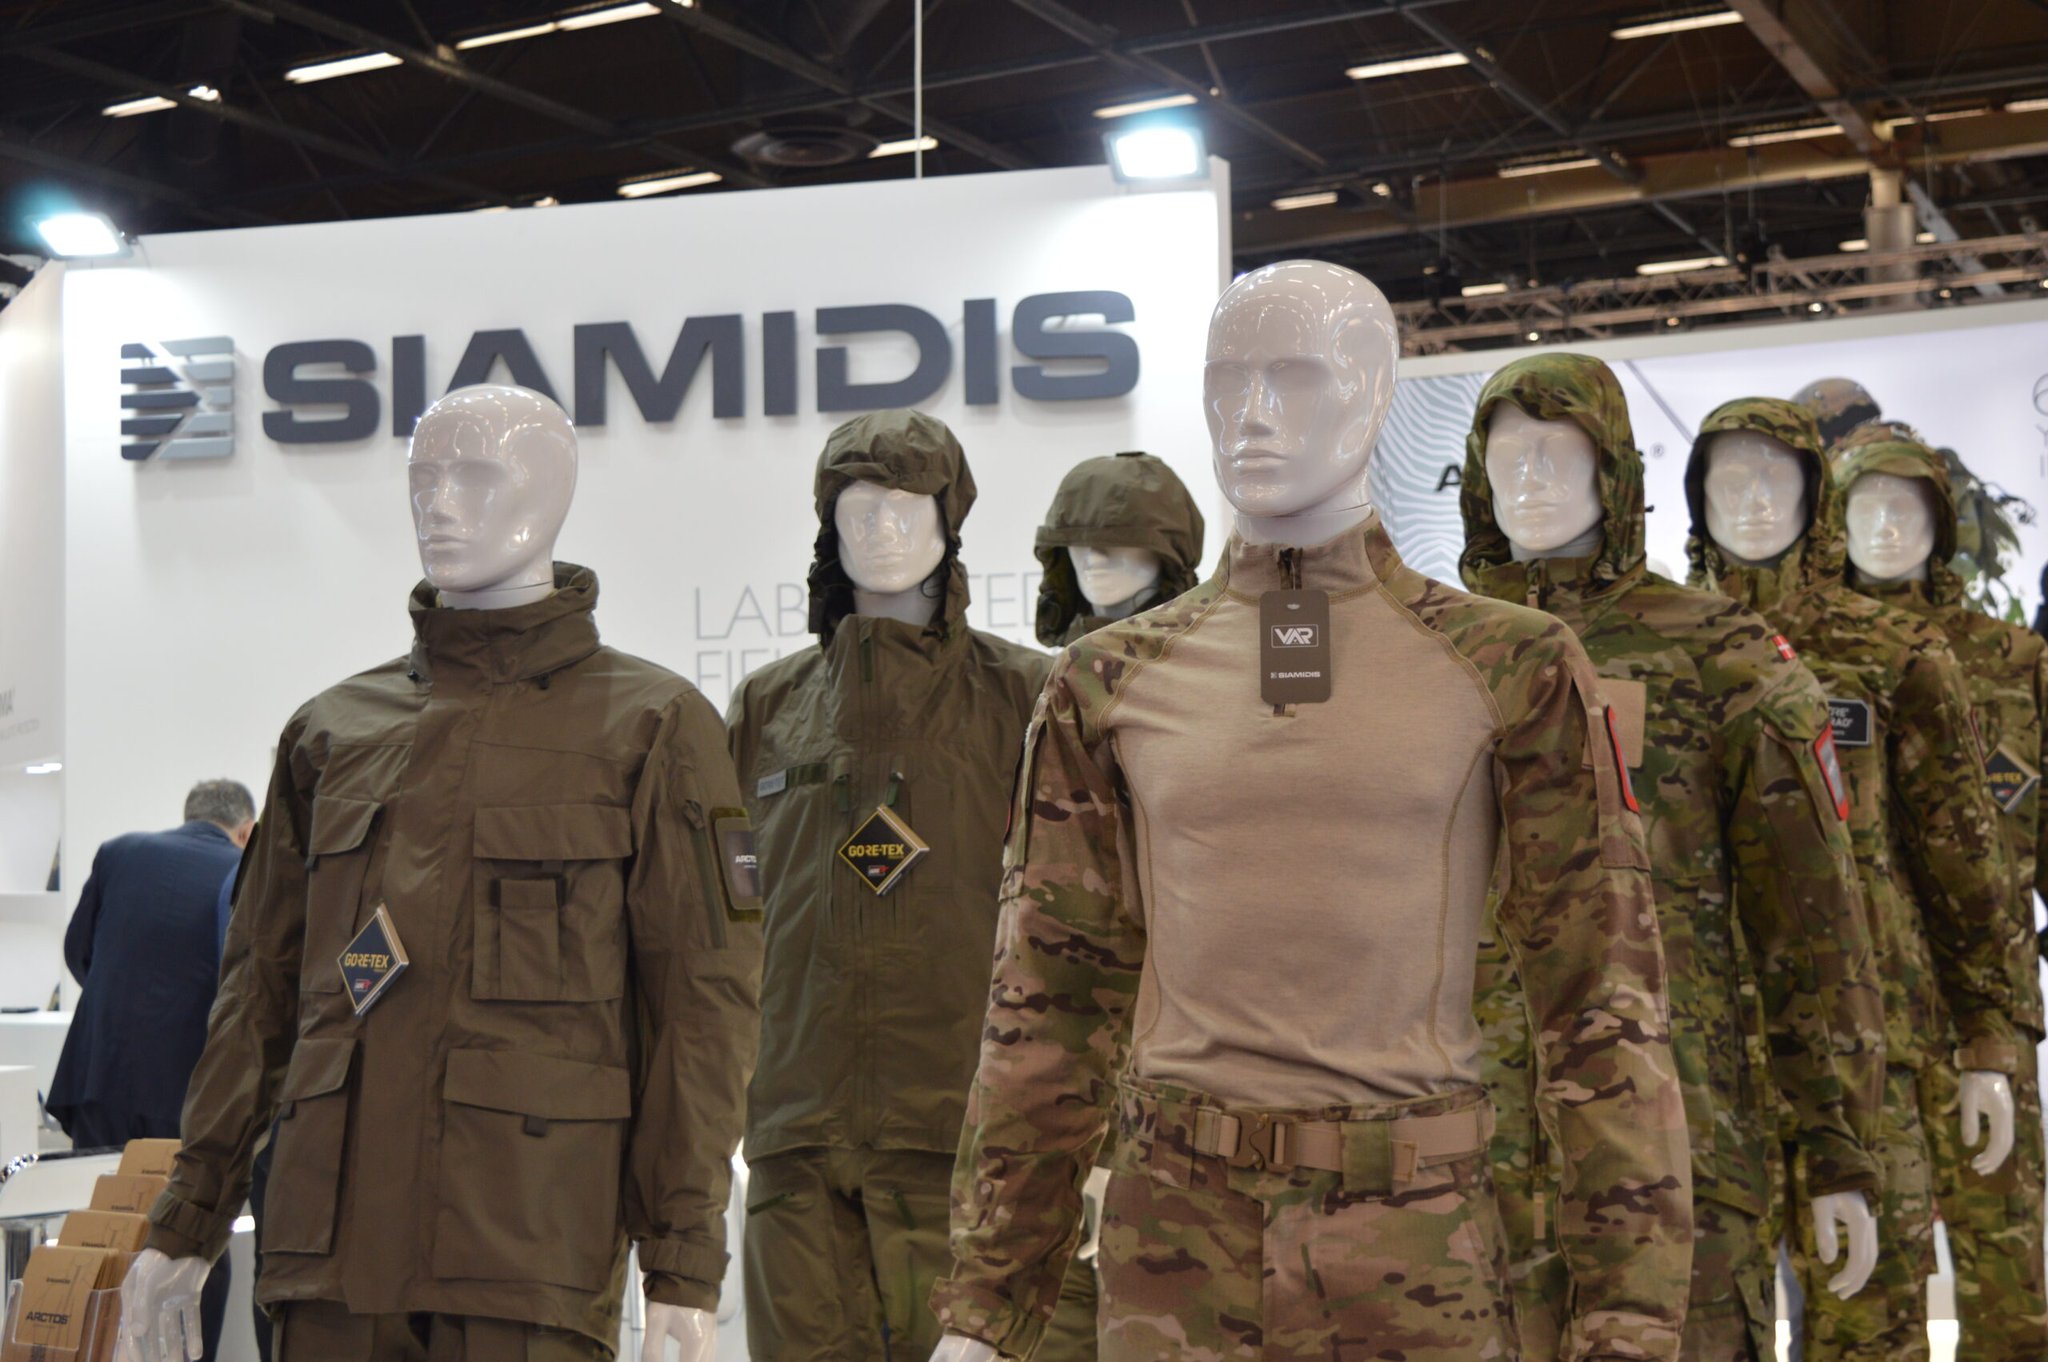 Σιαμίδης Α.Ε: Η εταιρεία που ντύνει τους στρατούς της Δύσης – Μια ελληνική ιστορία επιτυχίας